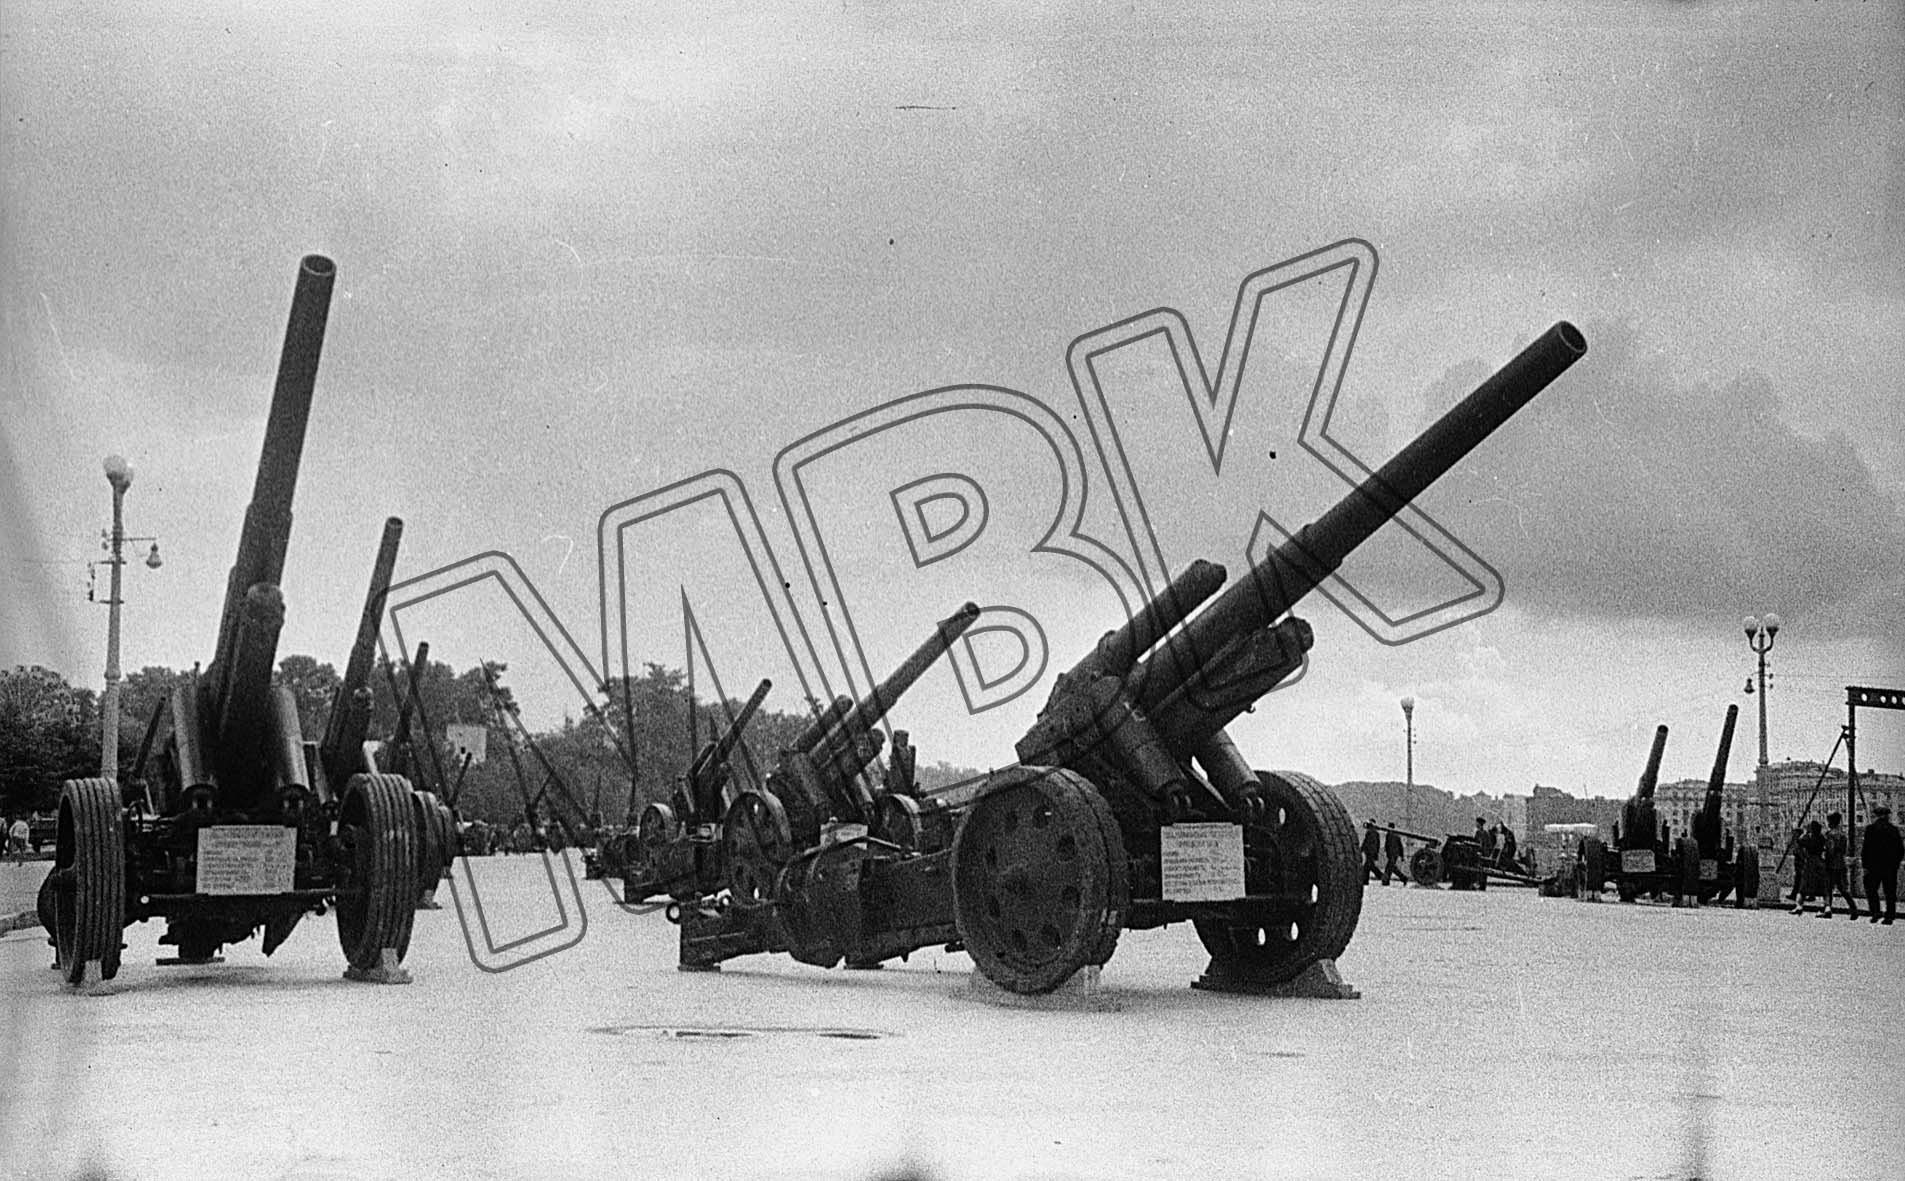 Fotografie: Präsentation deutscher Beutewaffen, Moskau, Juli 1943 (Museum Berlin-Karlshorst RR-P)